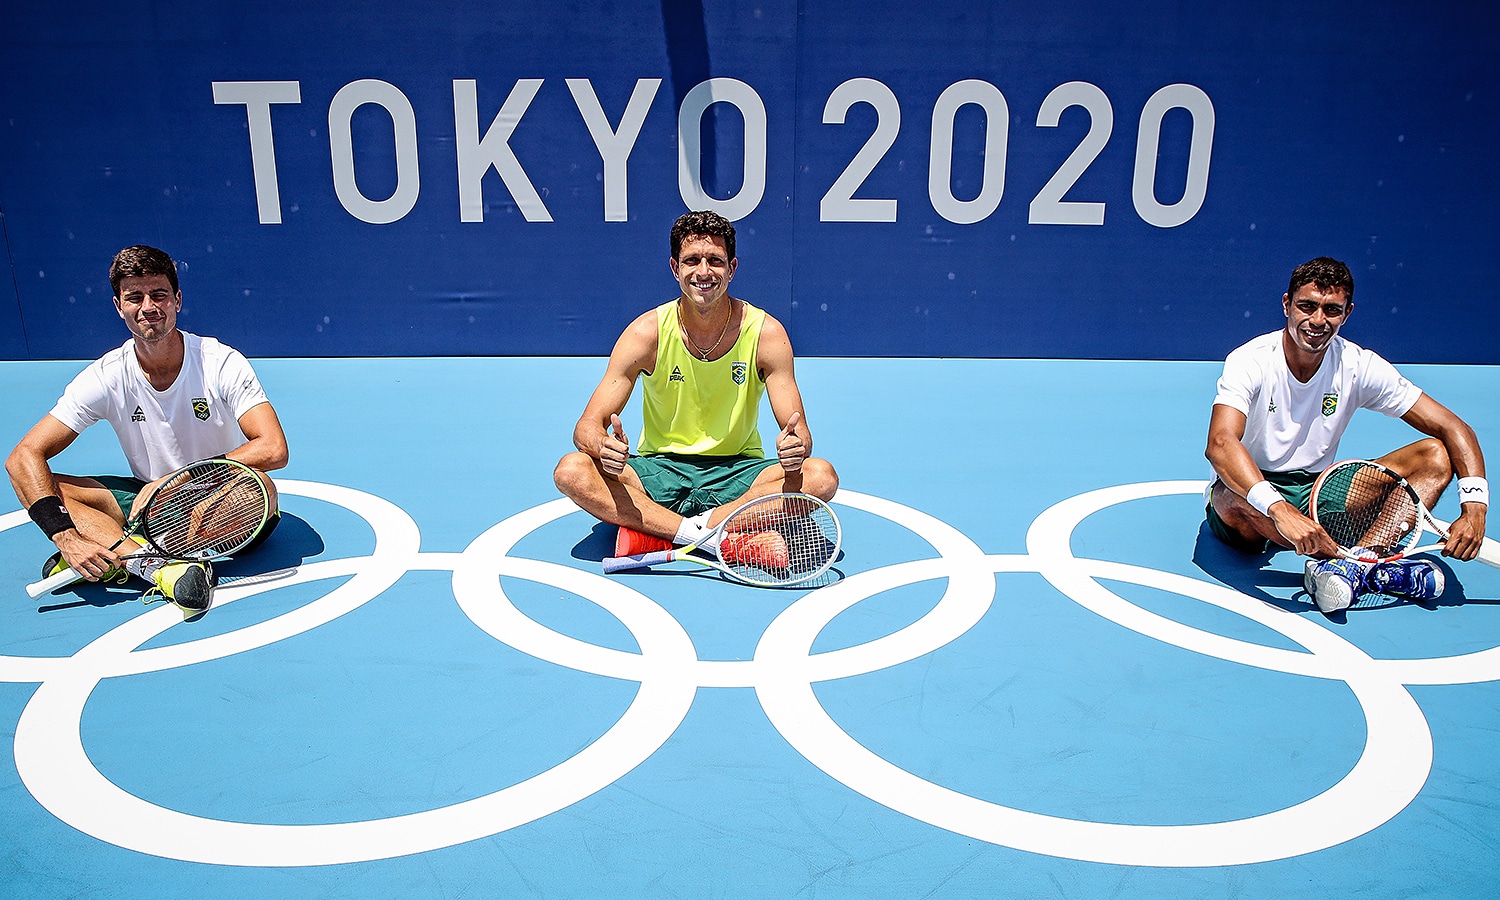 Tênis nos Jogos Olímpicos de Verão de 2020 - Simples masculino